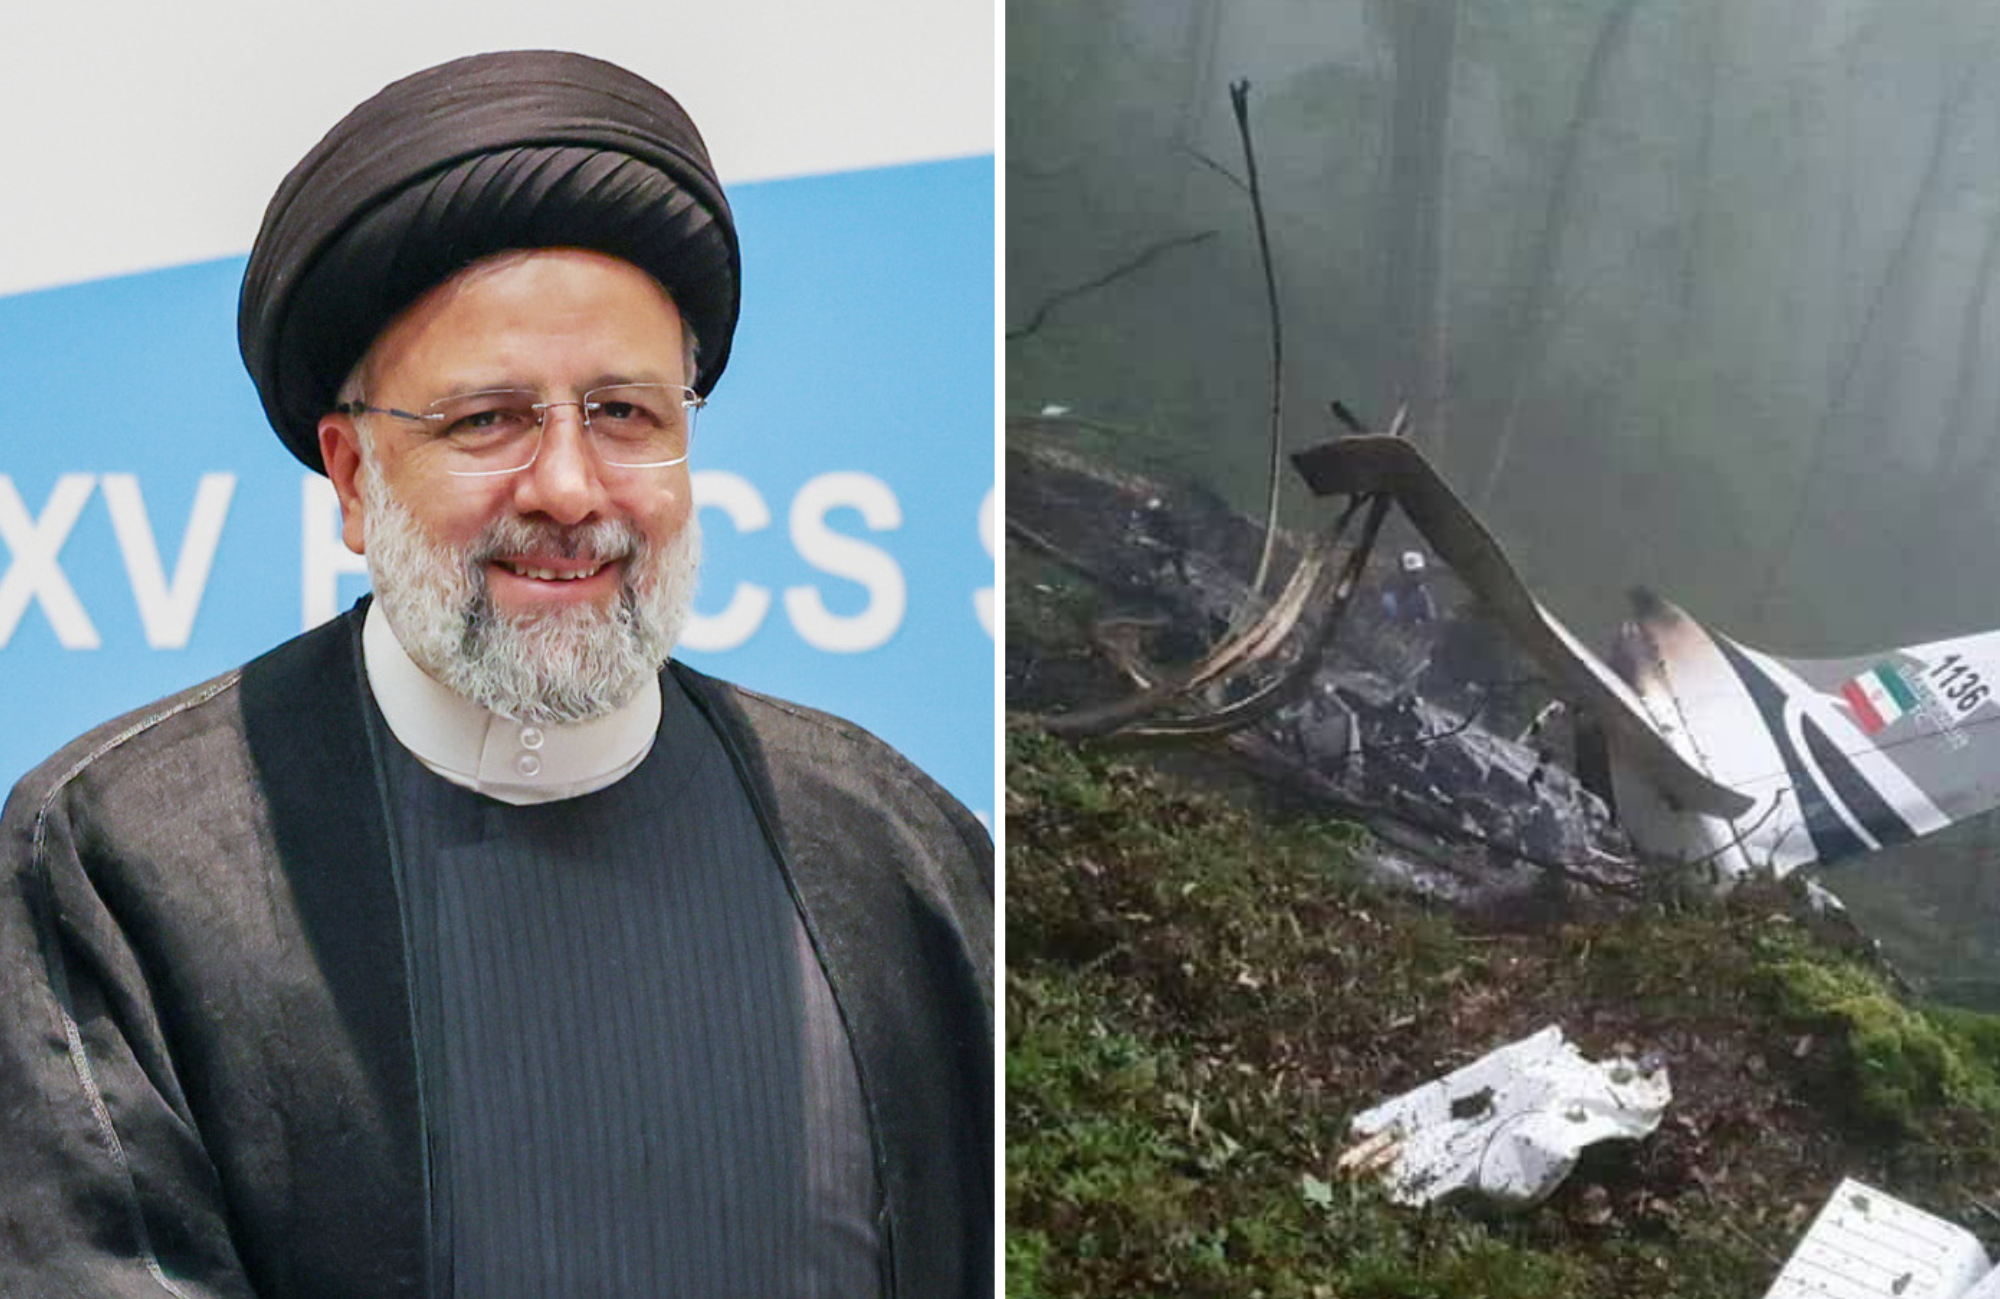 Morre presidente do Irã aos 63 anos em acidente de helicóptero